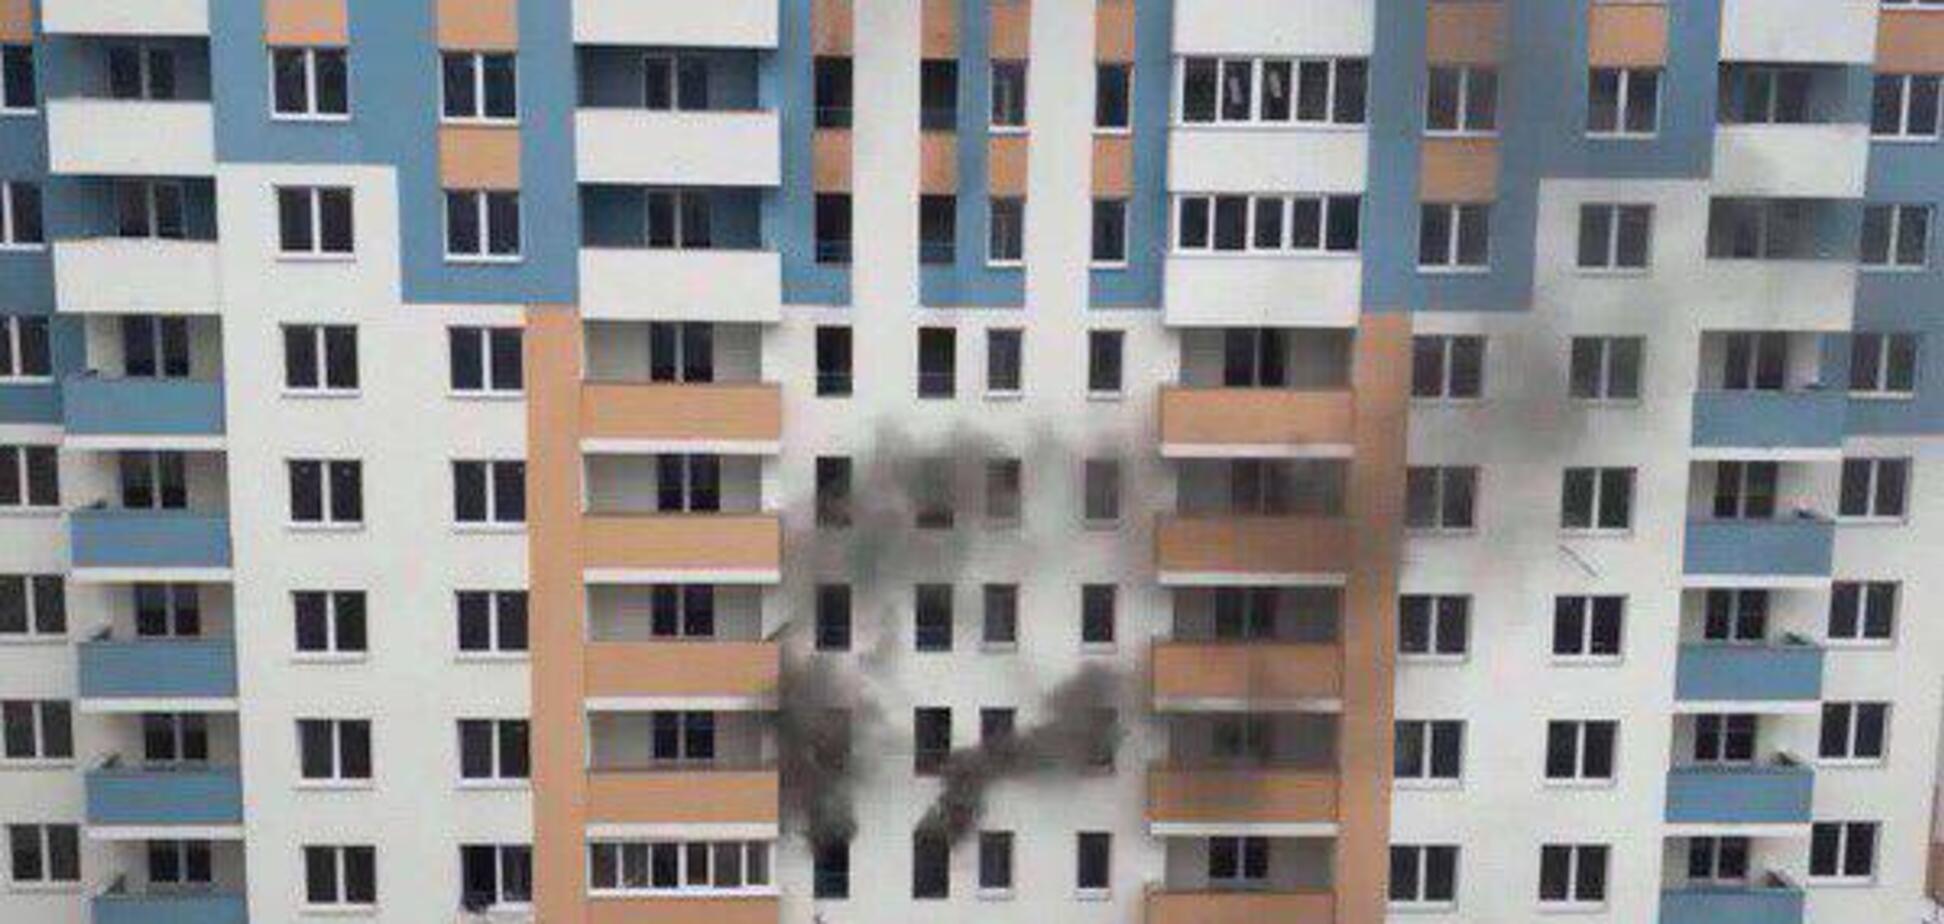 Горело с 3 по 18 этаж: в новостройке Киева случился мощный пожар